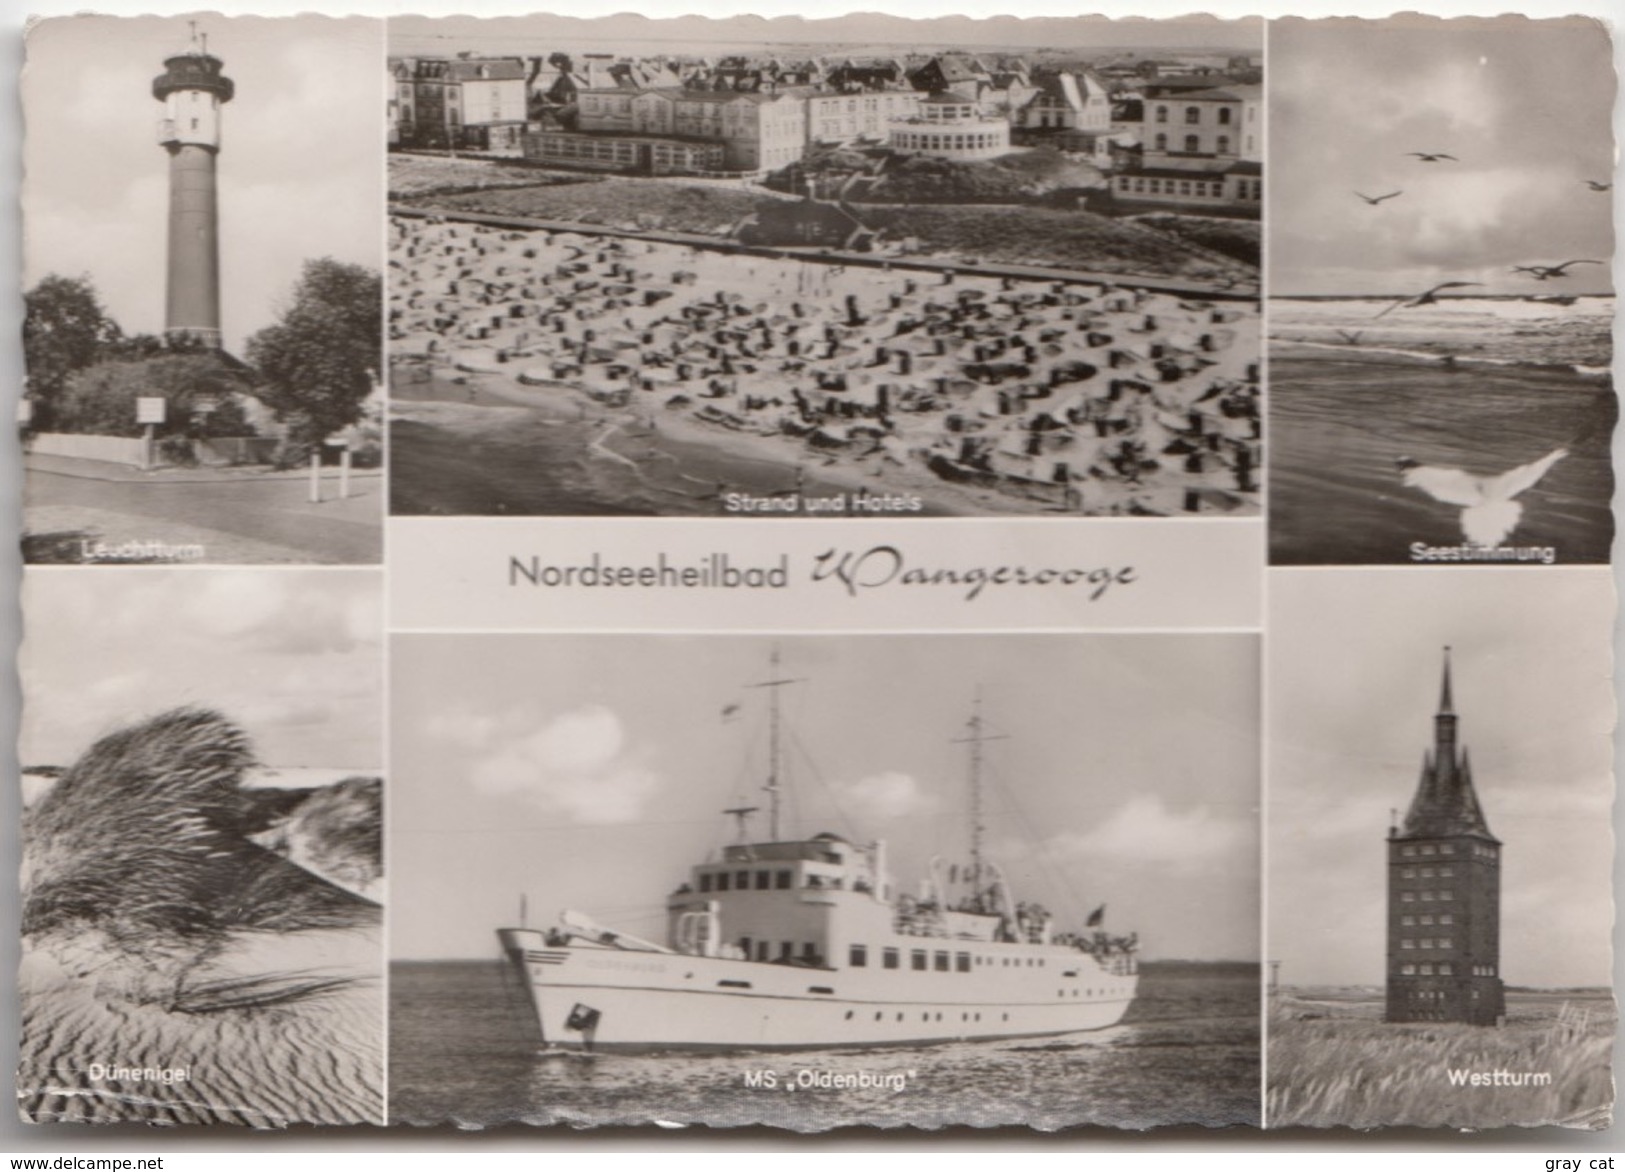 Nordseeheilbad Wangerooge, Multi View, 1963 Used Real Photo Postcard [19919] - Wangerooge